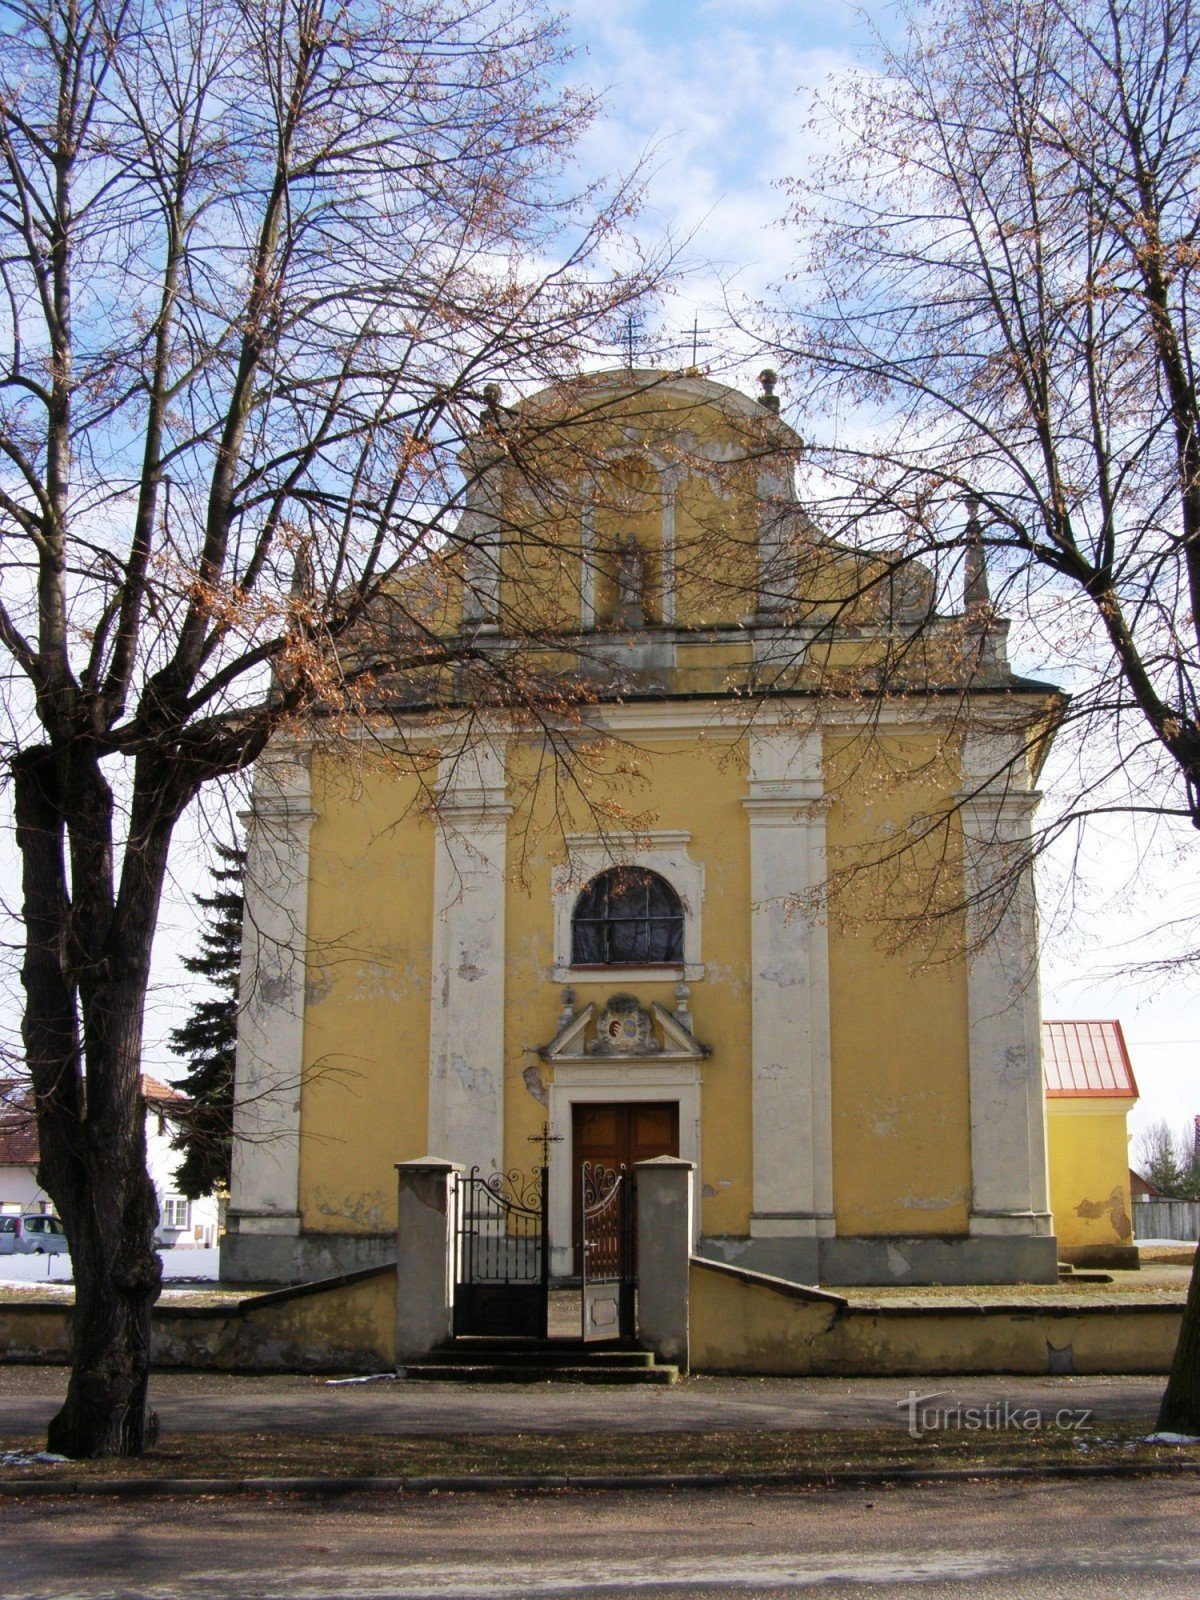 Lovčice - Cerkev sv. Bartolomeja z zvonikom